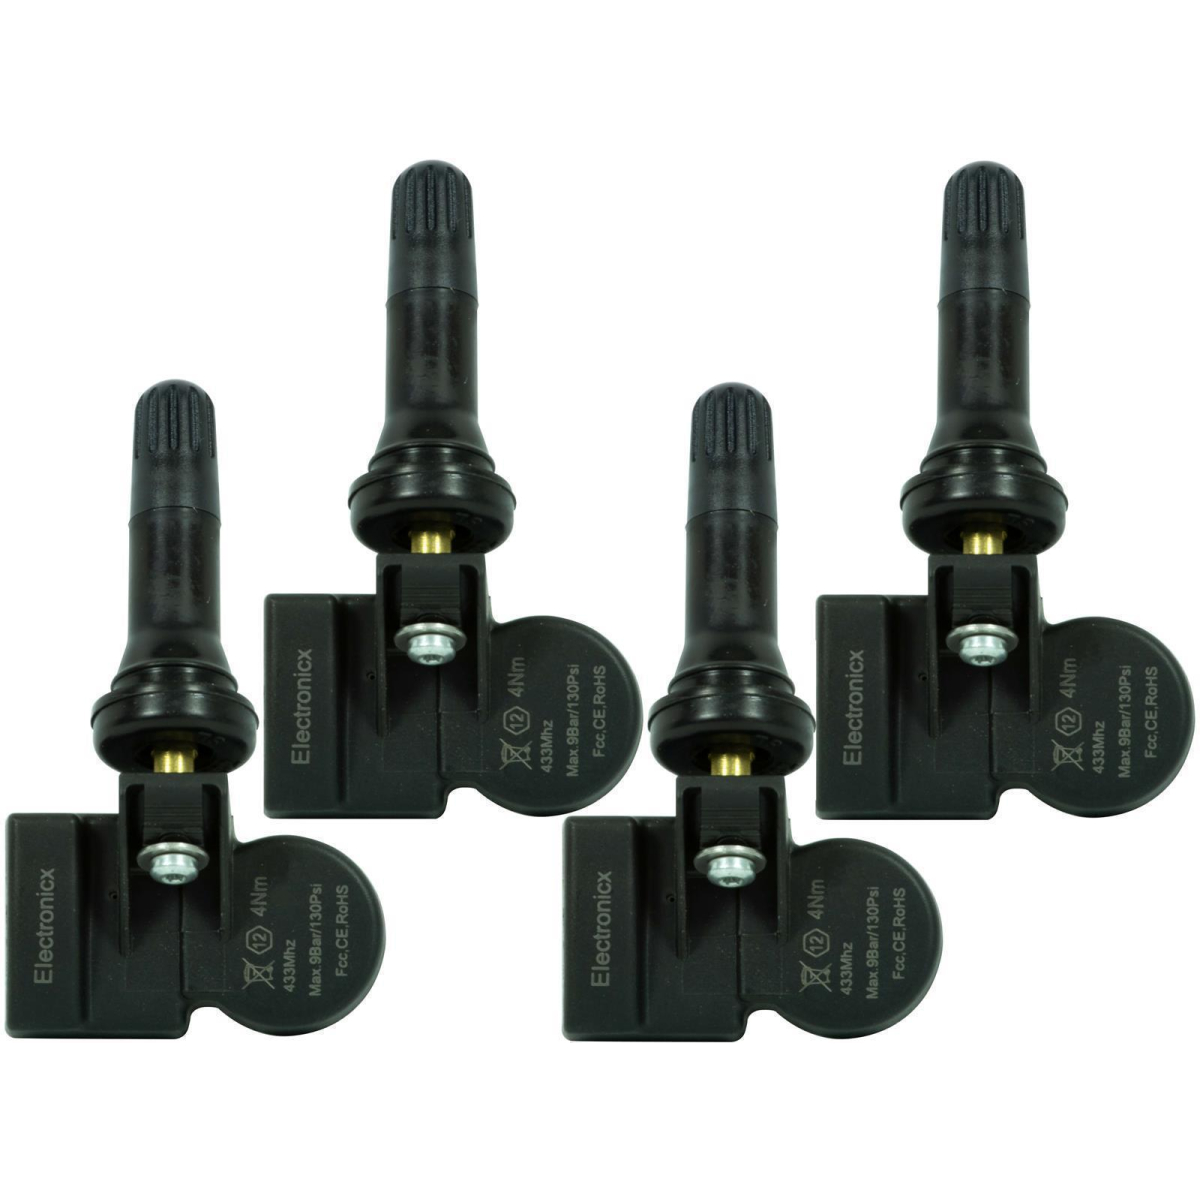 4x RDKS TPMS tire pressure sensors rubber valve for Borgward BX5 BX7